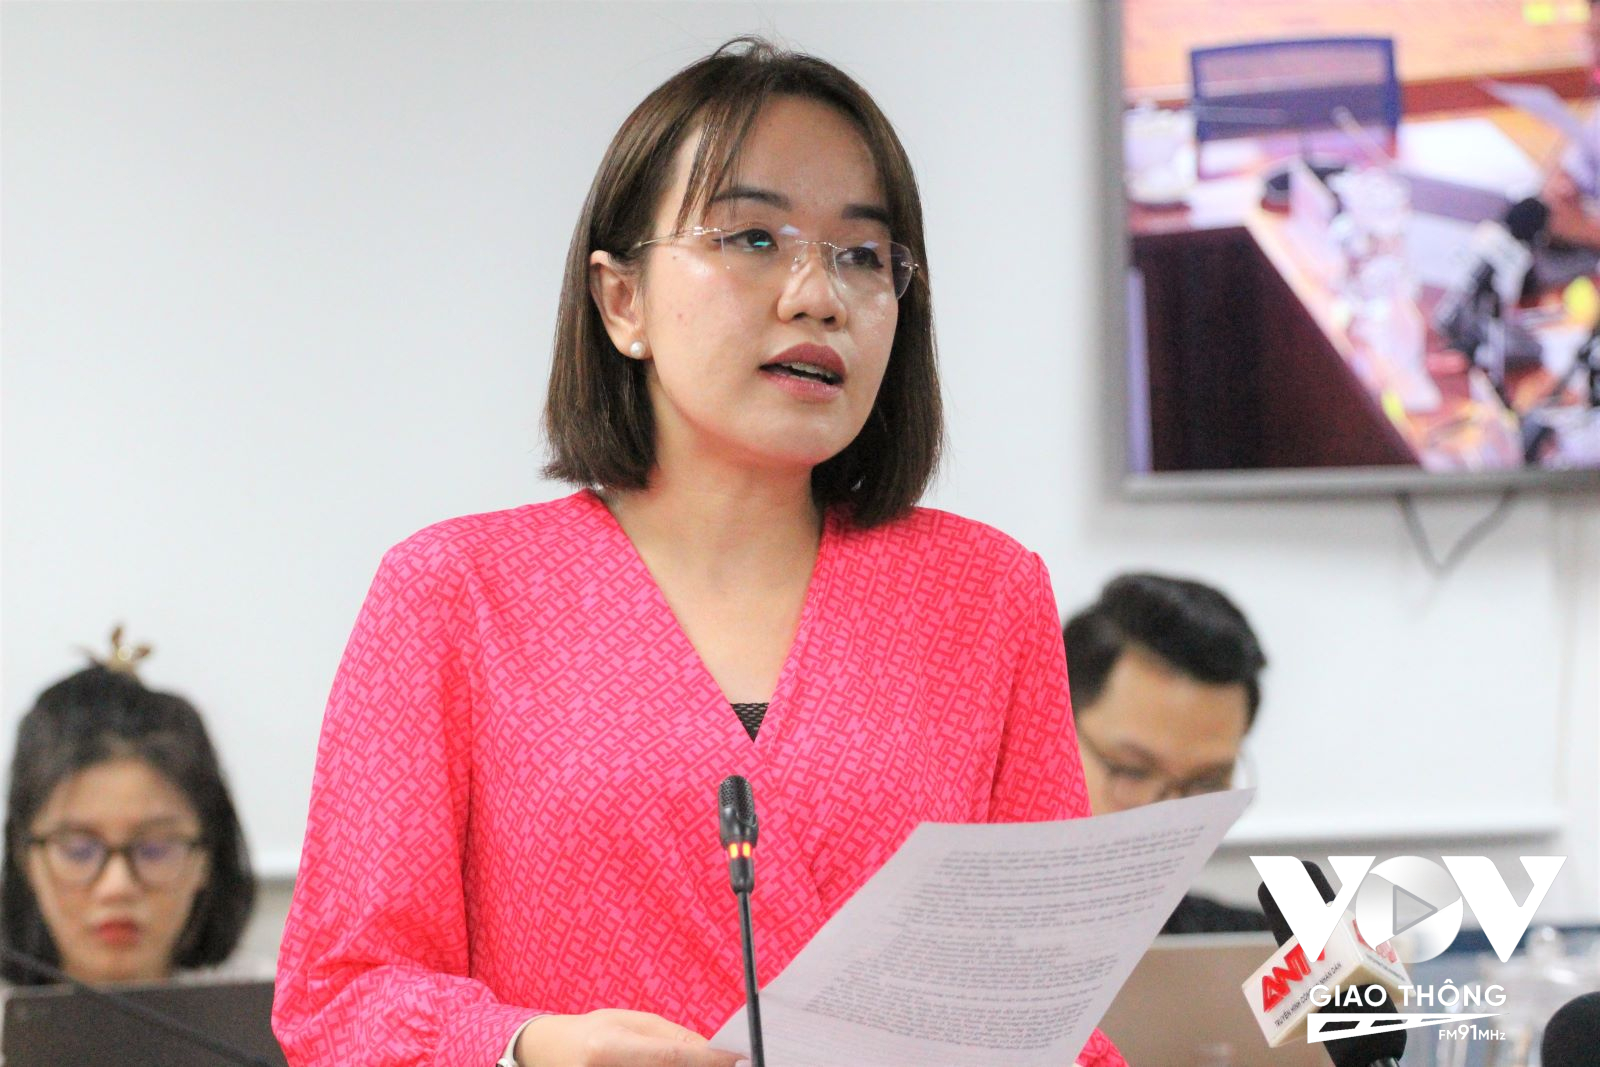 Bà Lê Thiện Quỳnh Như, Chánh văn phòng Sở Y tế TP.HCM phát biểu vào chiều 25/5.